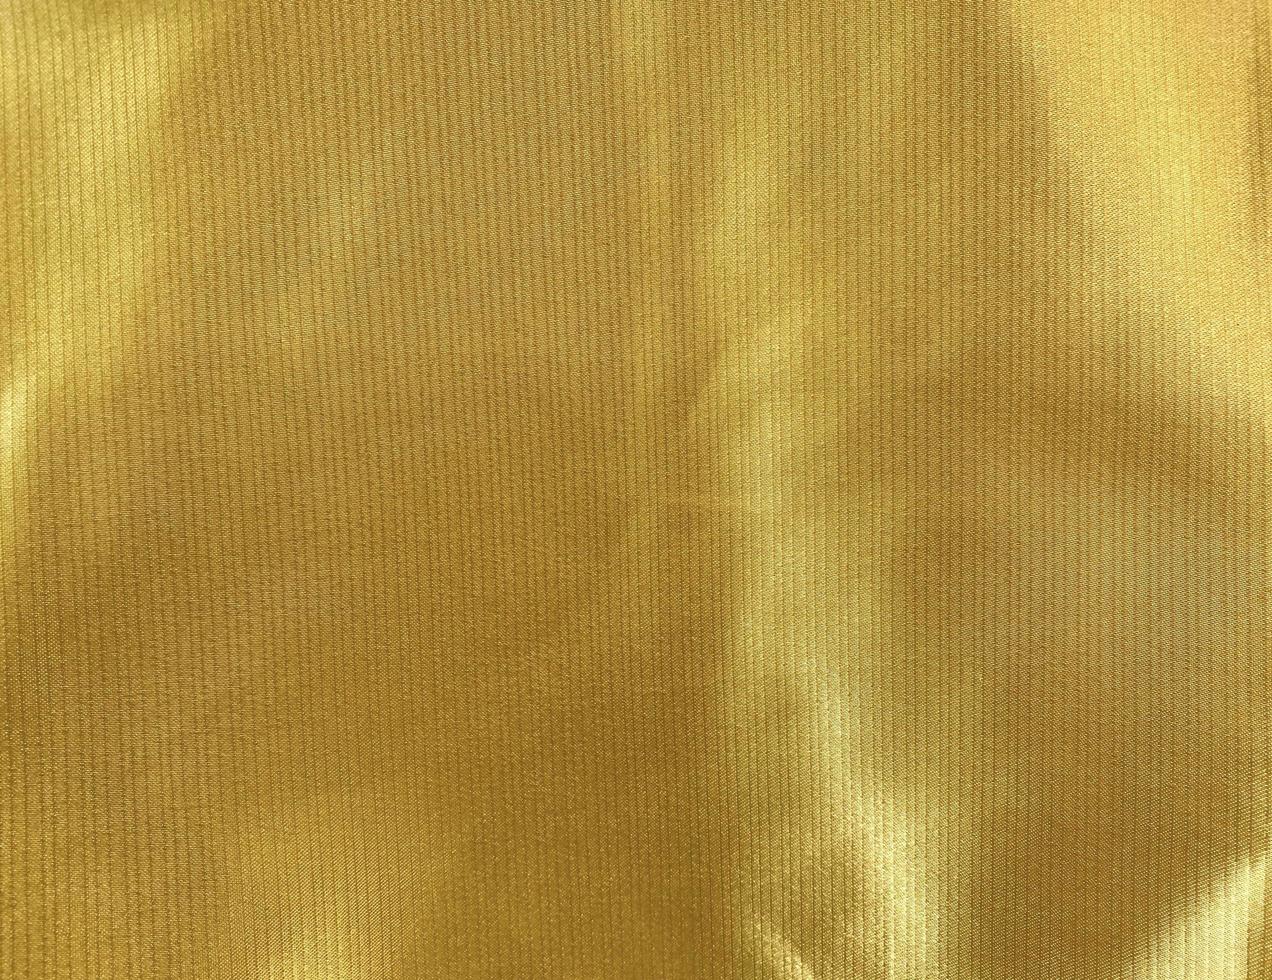 textura de tela de tela dorada utilizada como fondo. fondo de tela de tela  dorada vacía de material textil suave y liso. hay espacio para el texto.  15235872 Foto de stock en